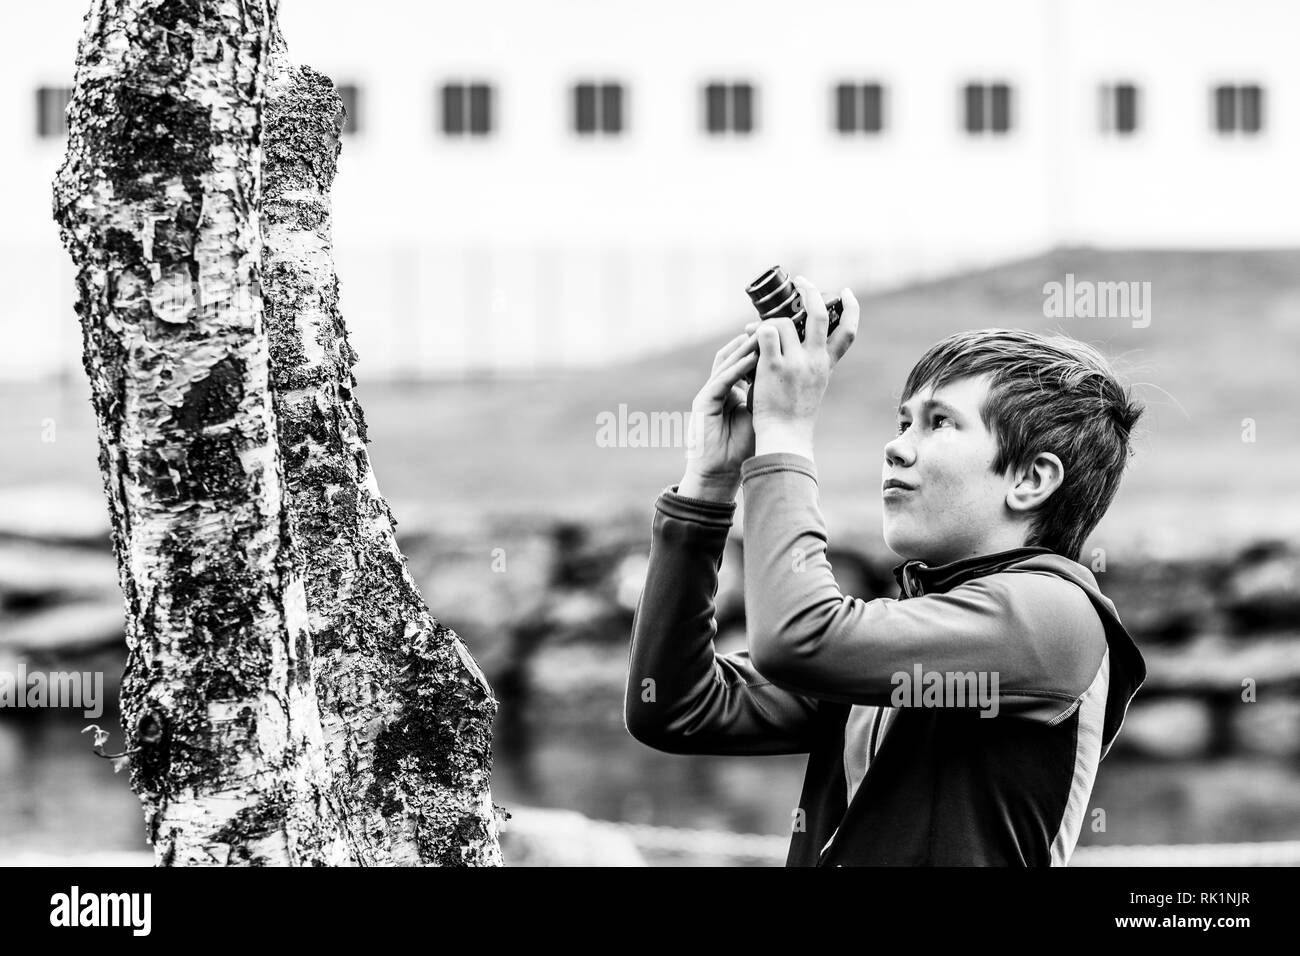 Cándido retrato de muchacho fotografiar árbol con cámara digital, imagen en blanco y negro Foto de stock